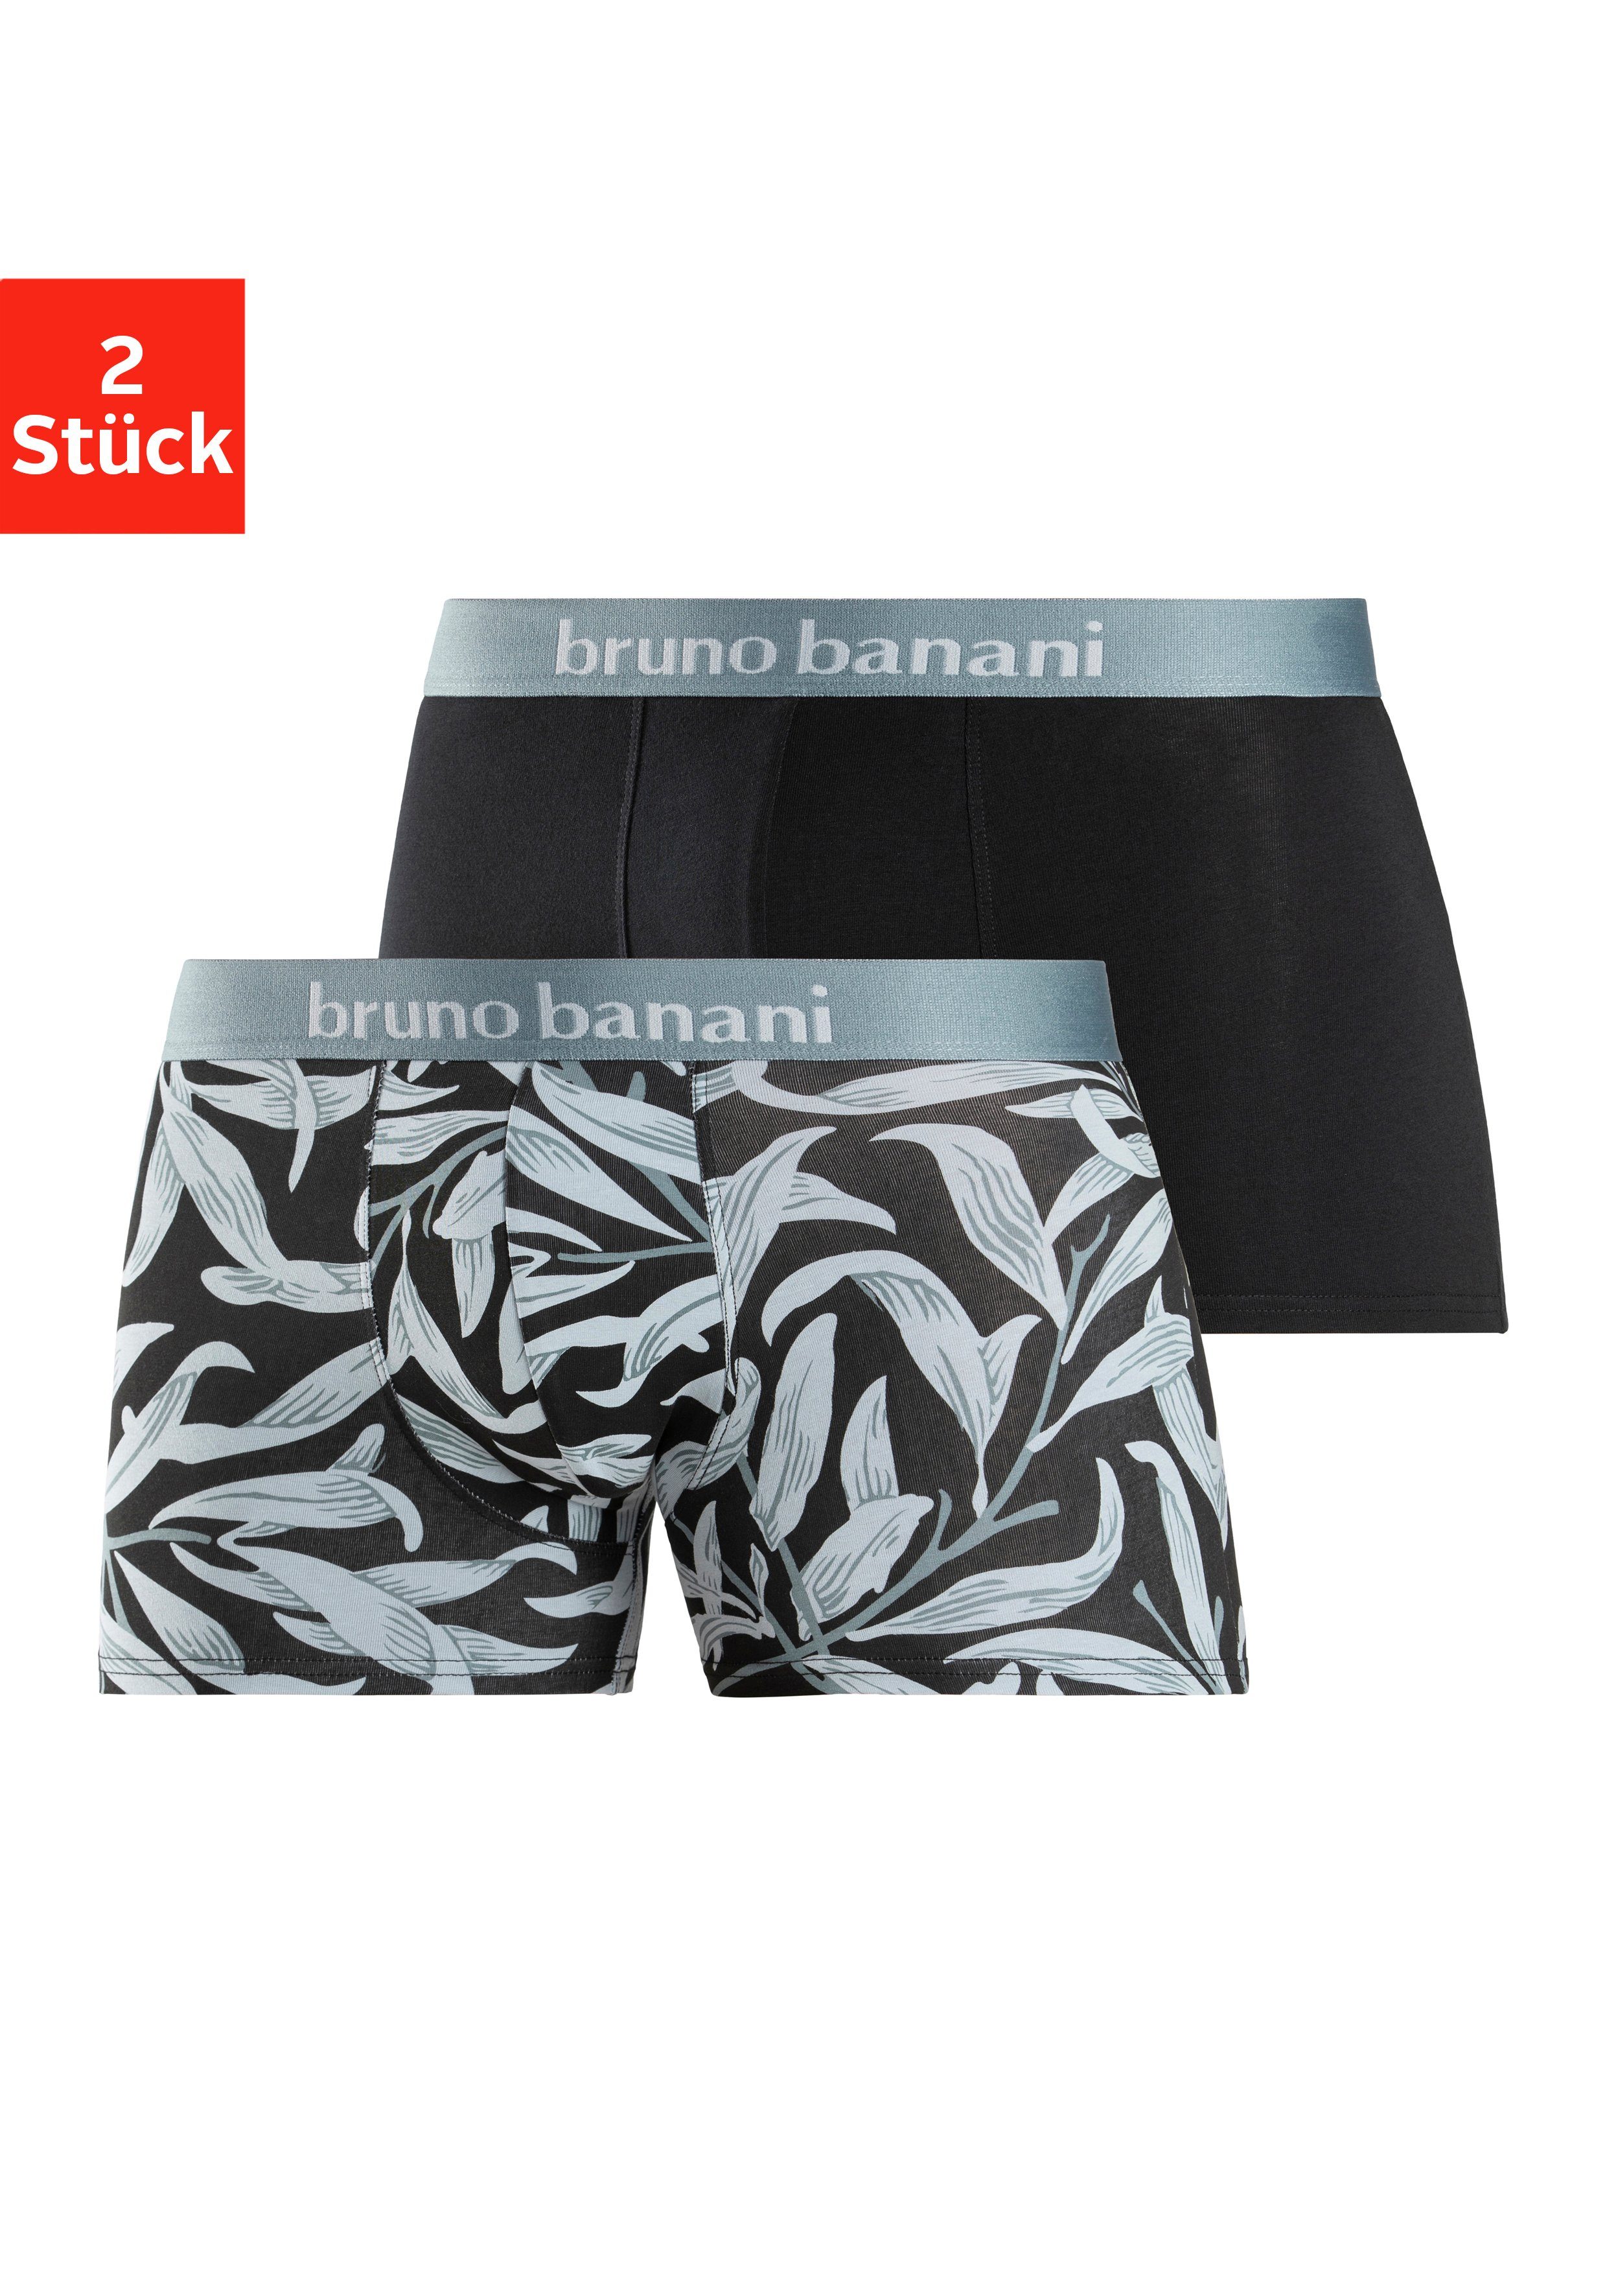 Bruno Banani Herrenunterwäsche online kaufen | OTTO